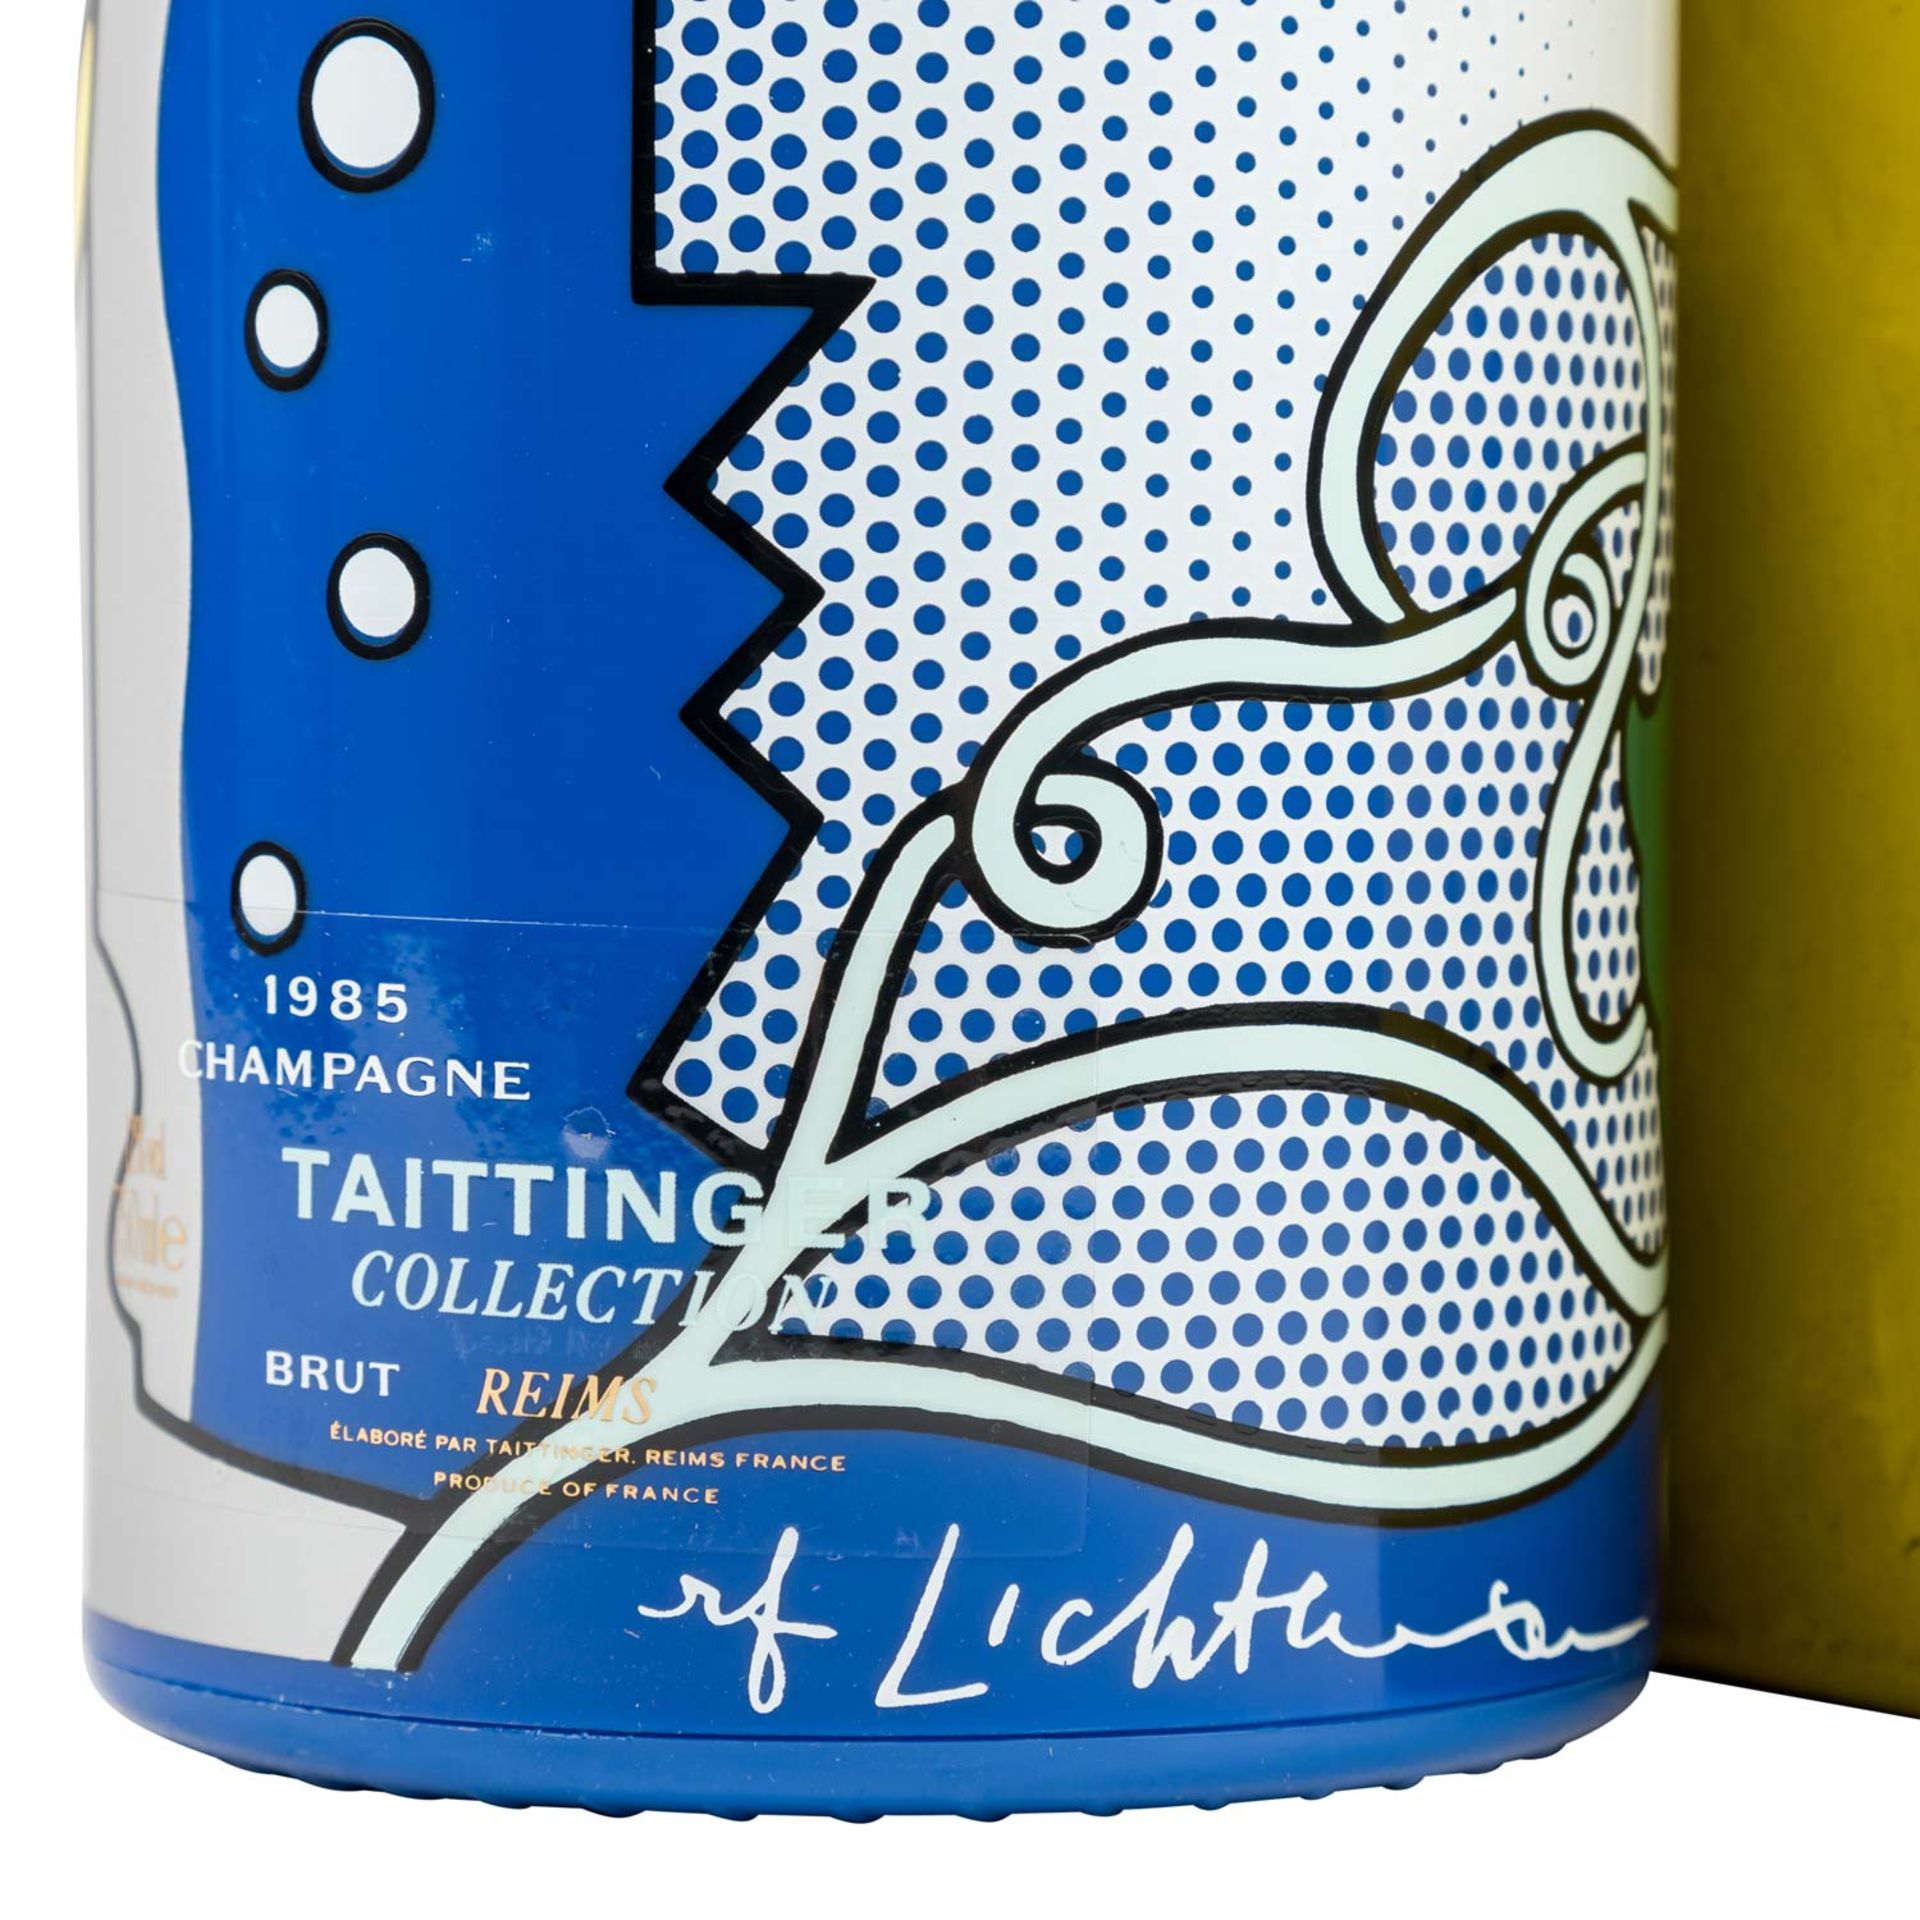 TAITTINGER Champagner 'Collection' 1 Flasche 'Roy Lichtenstein' 1985 - Bild 2 aus 7